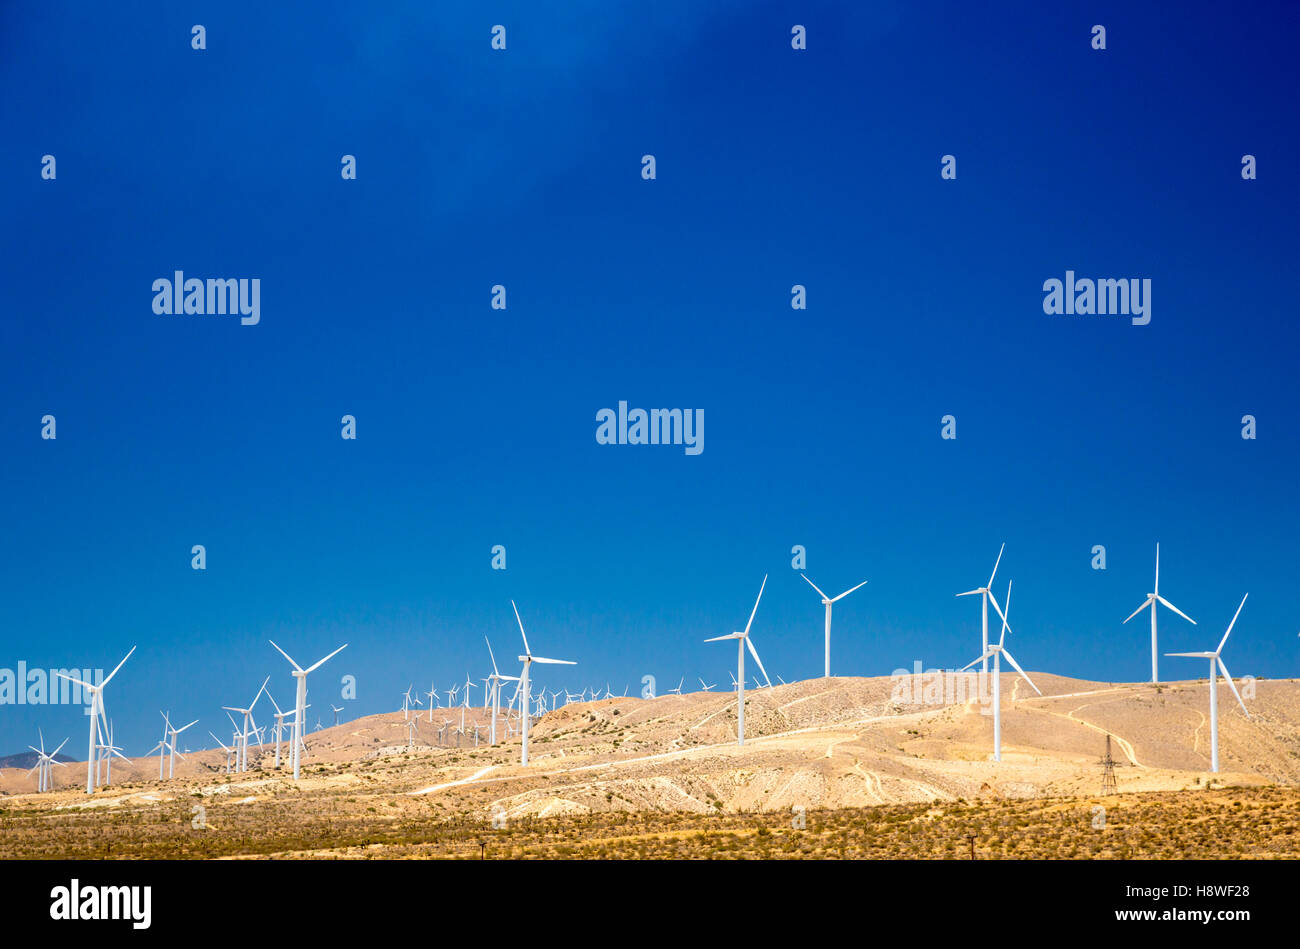 Tehachapi, California - Wind turbines in the Tehachapi Wind Resource Area. Stock Photo